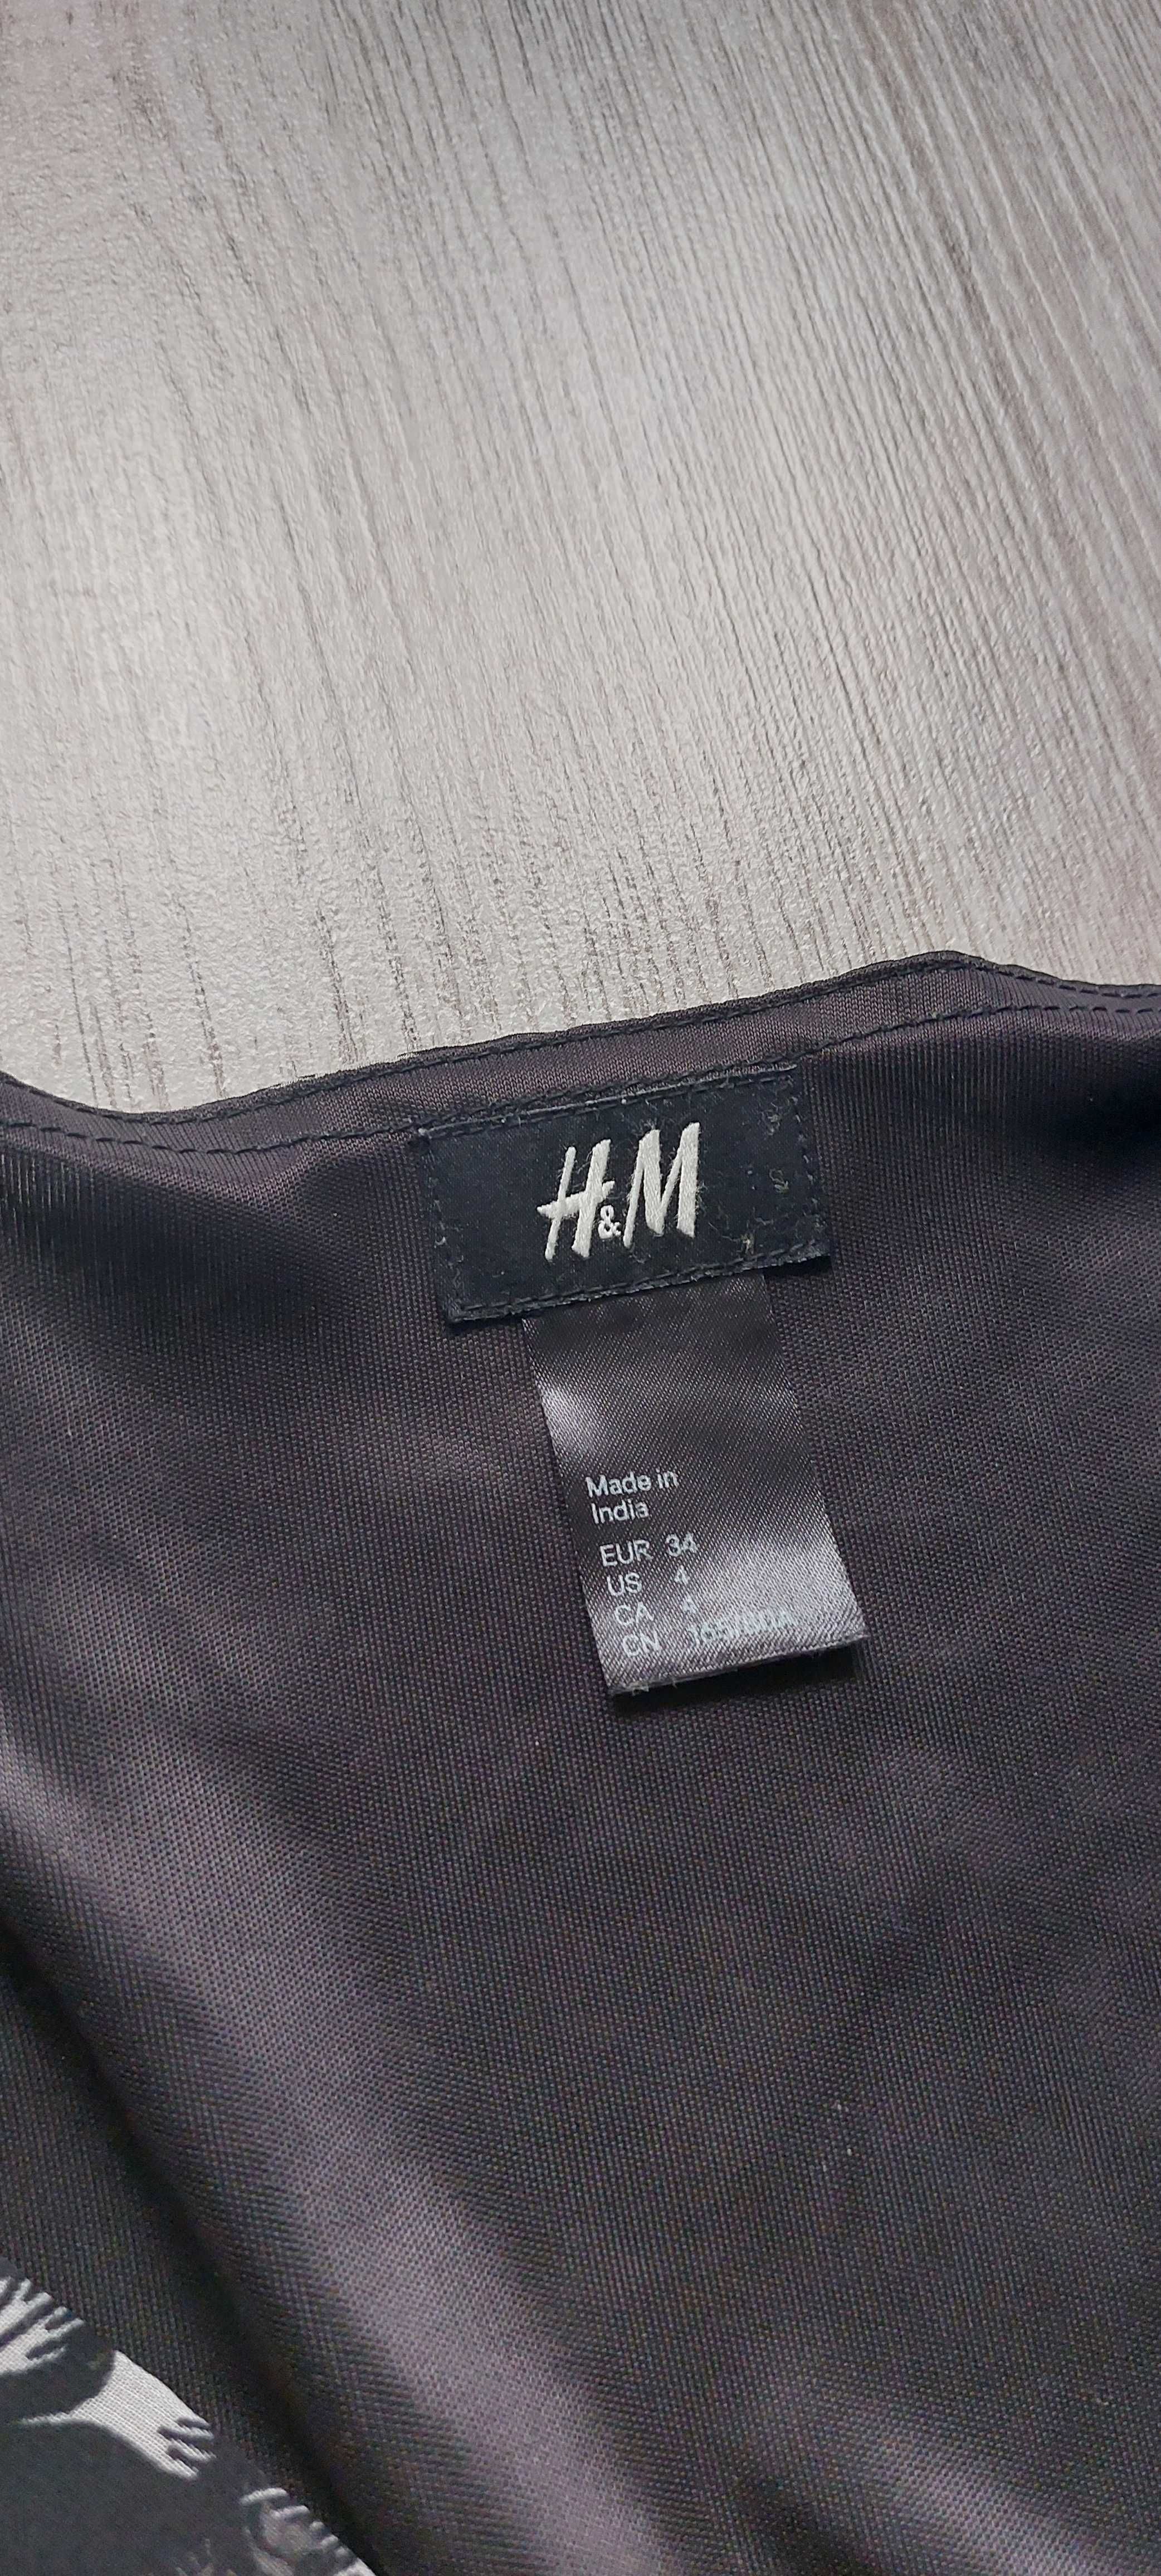 Bluzița H&M neagră cu model floral